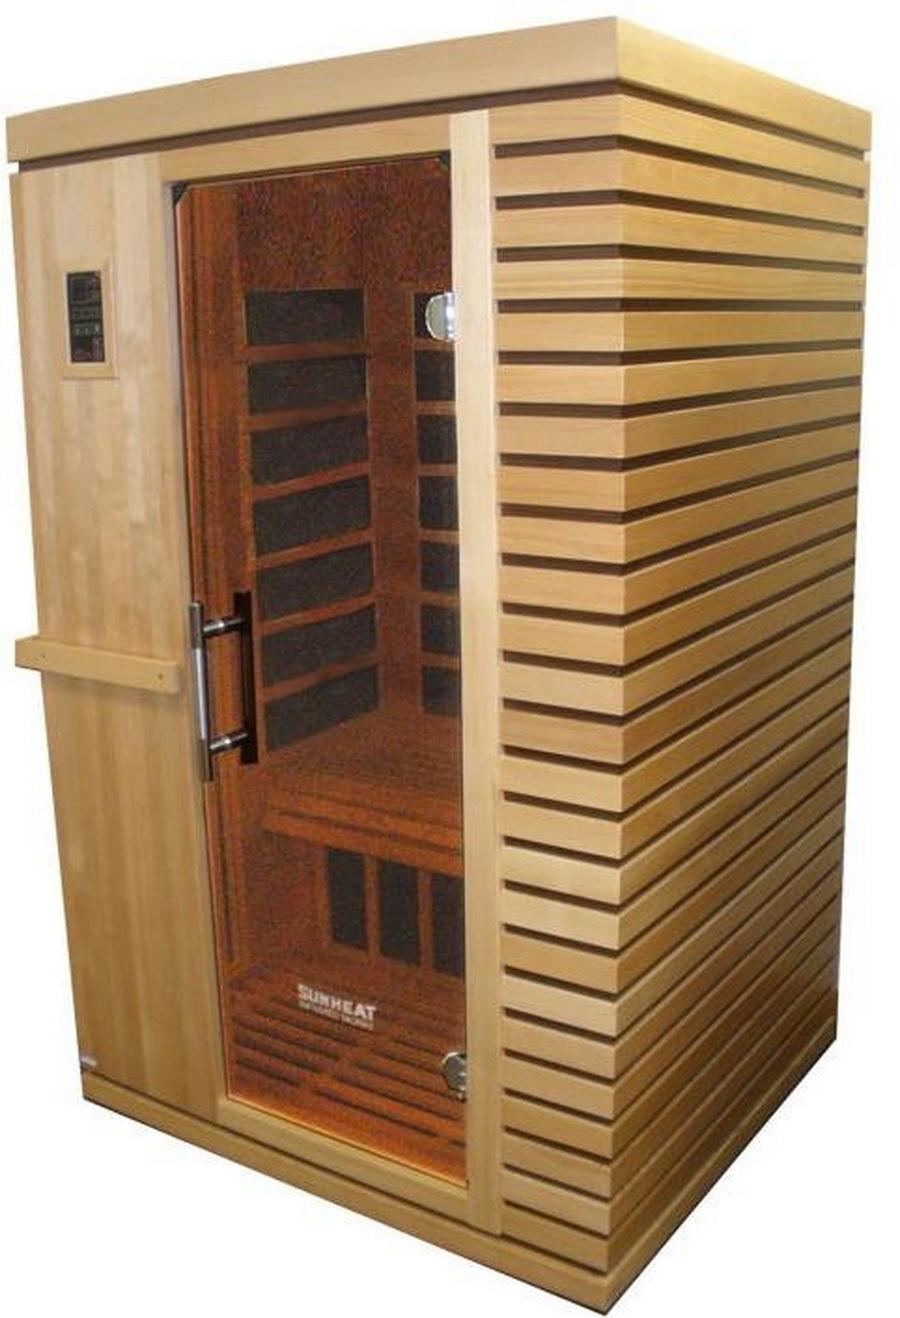 Sunheat SH1700 Personal Infrared Sauna